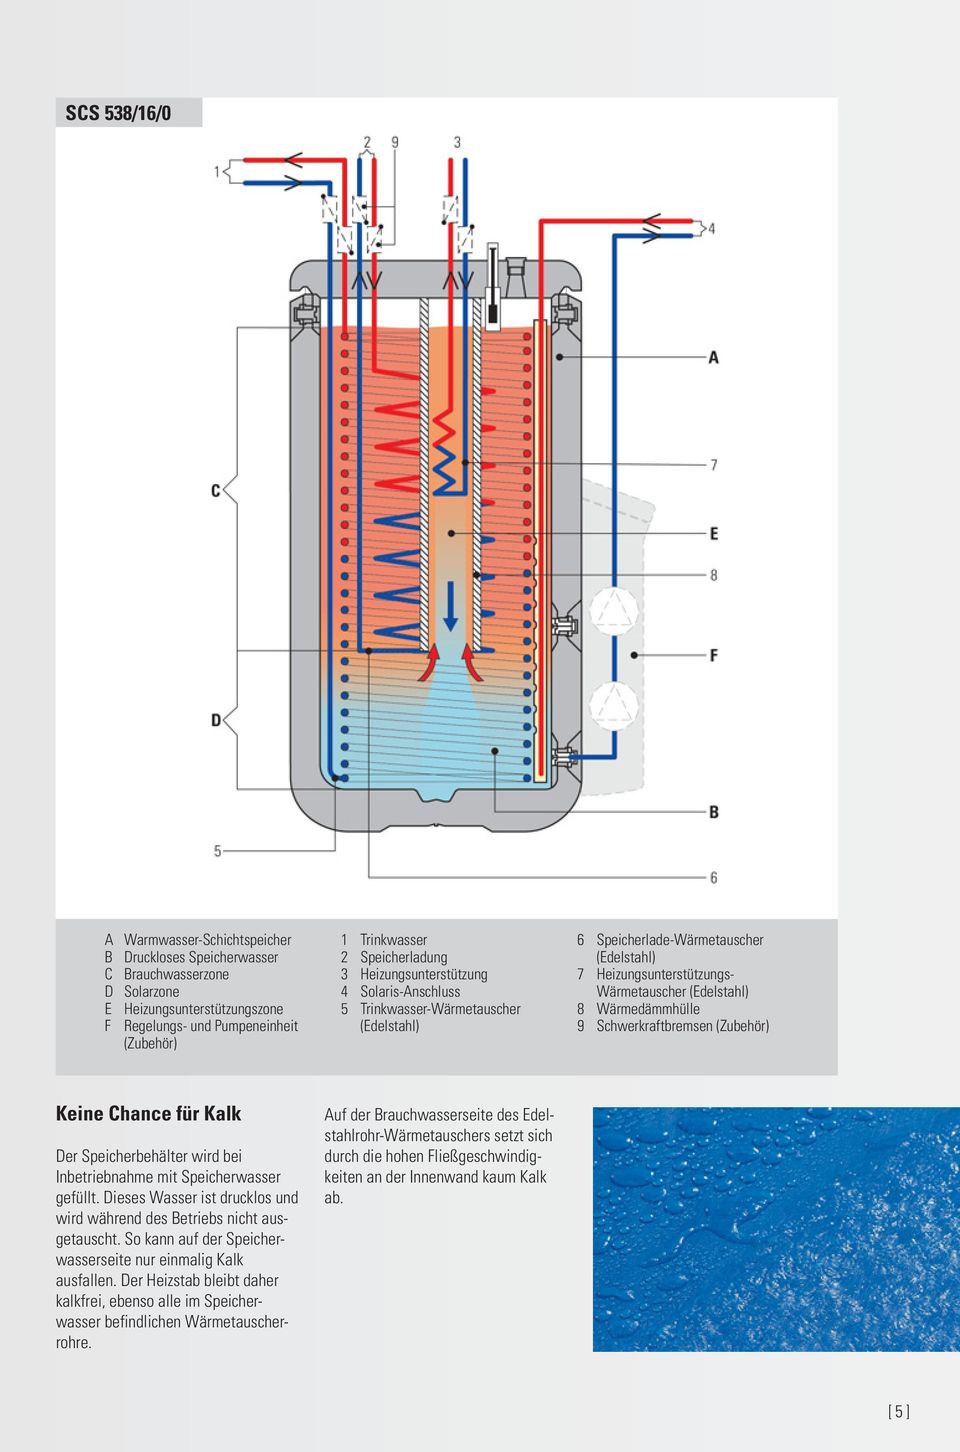 Wärmedämmhülle 9 Schwerkraftbremsen (Zubehör) Keine Chance für Kalk Der Speicherbehälter wird bei Inbetriebnahme mit Speicherwasser gefüllt.